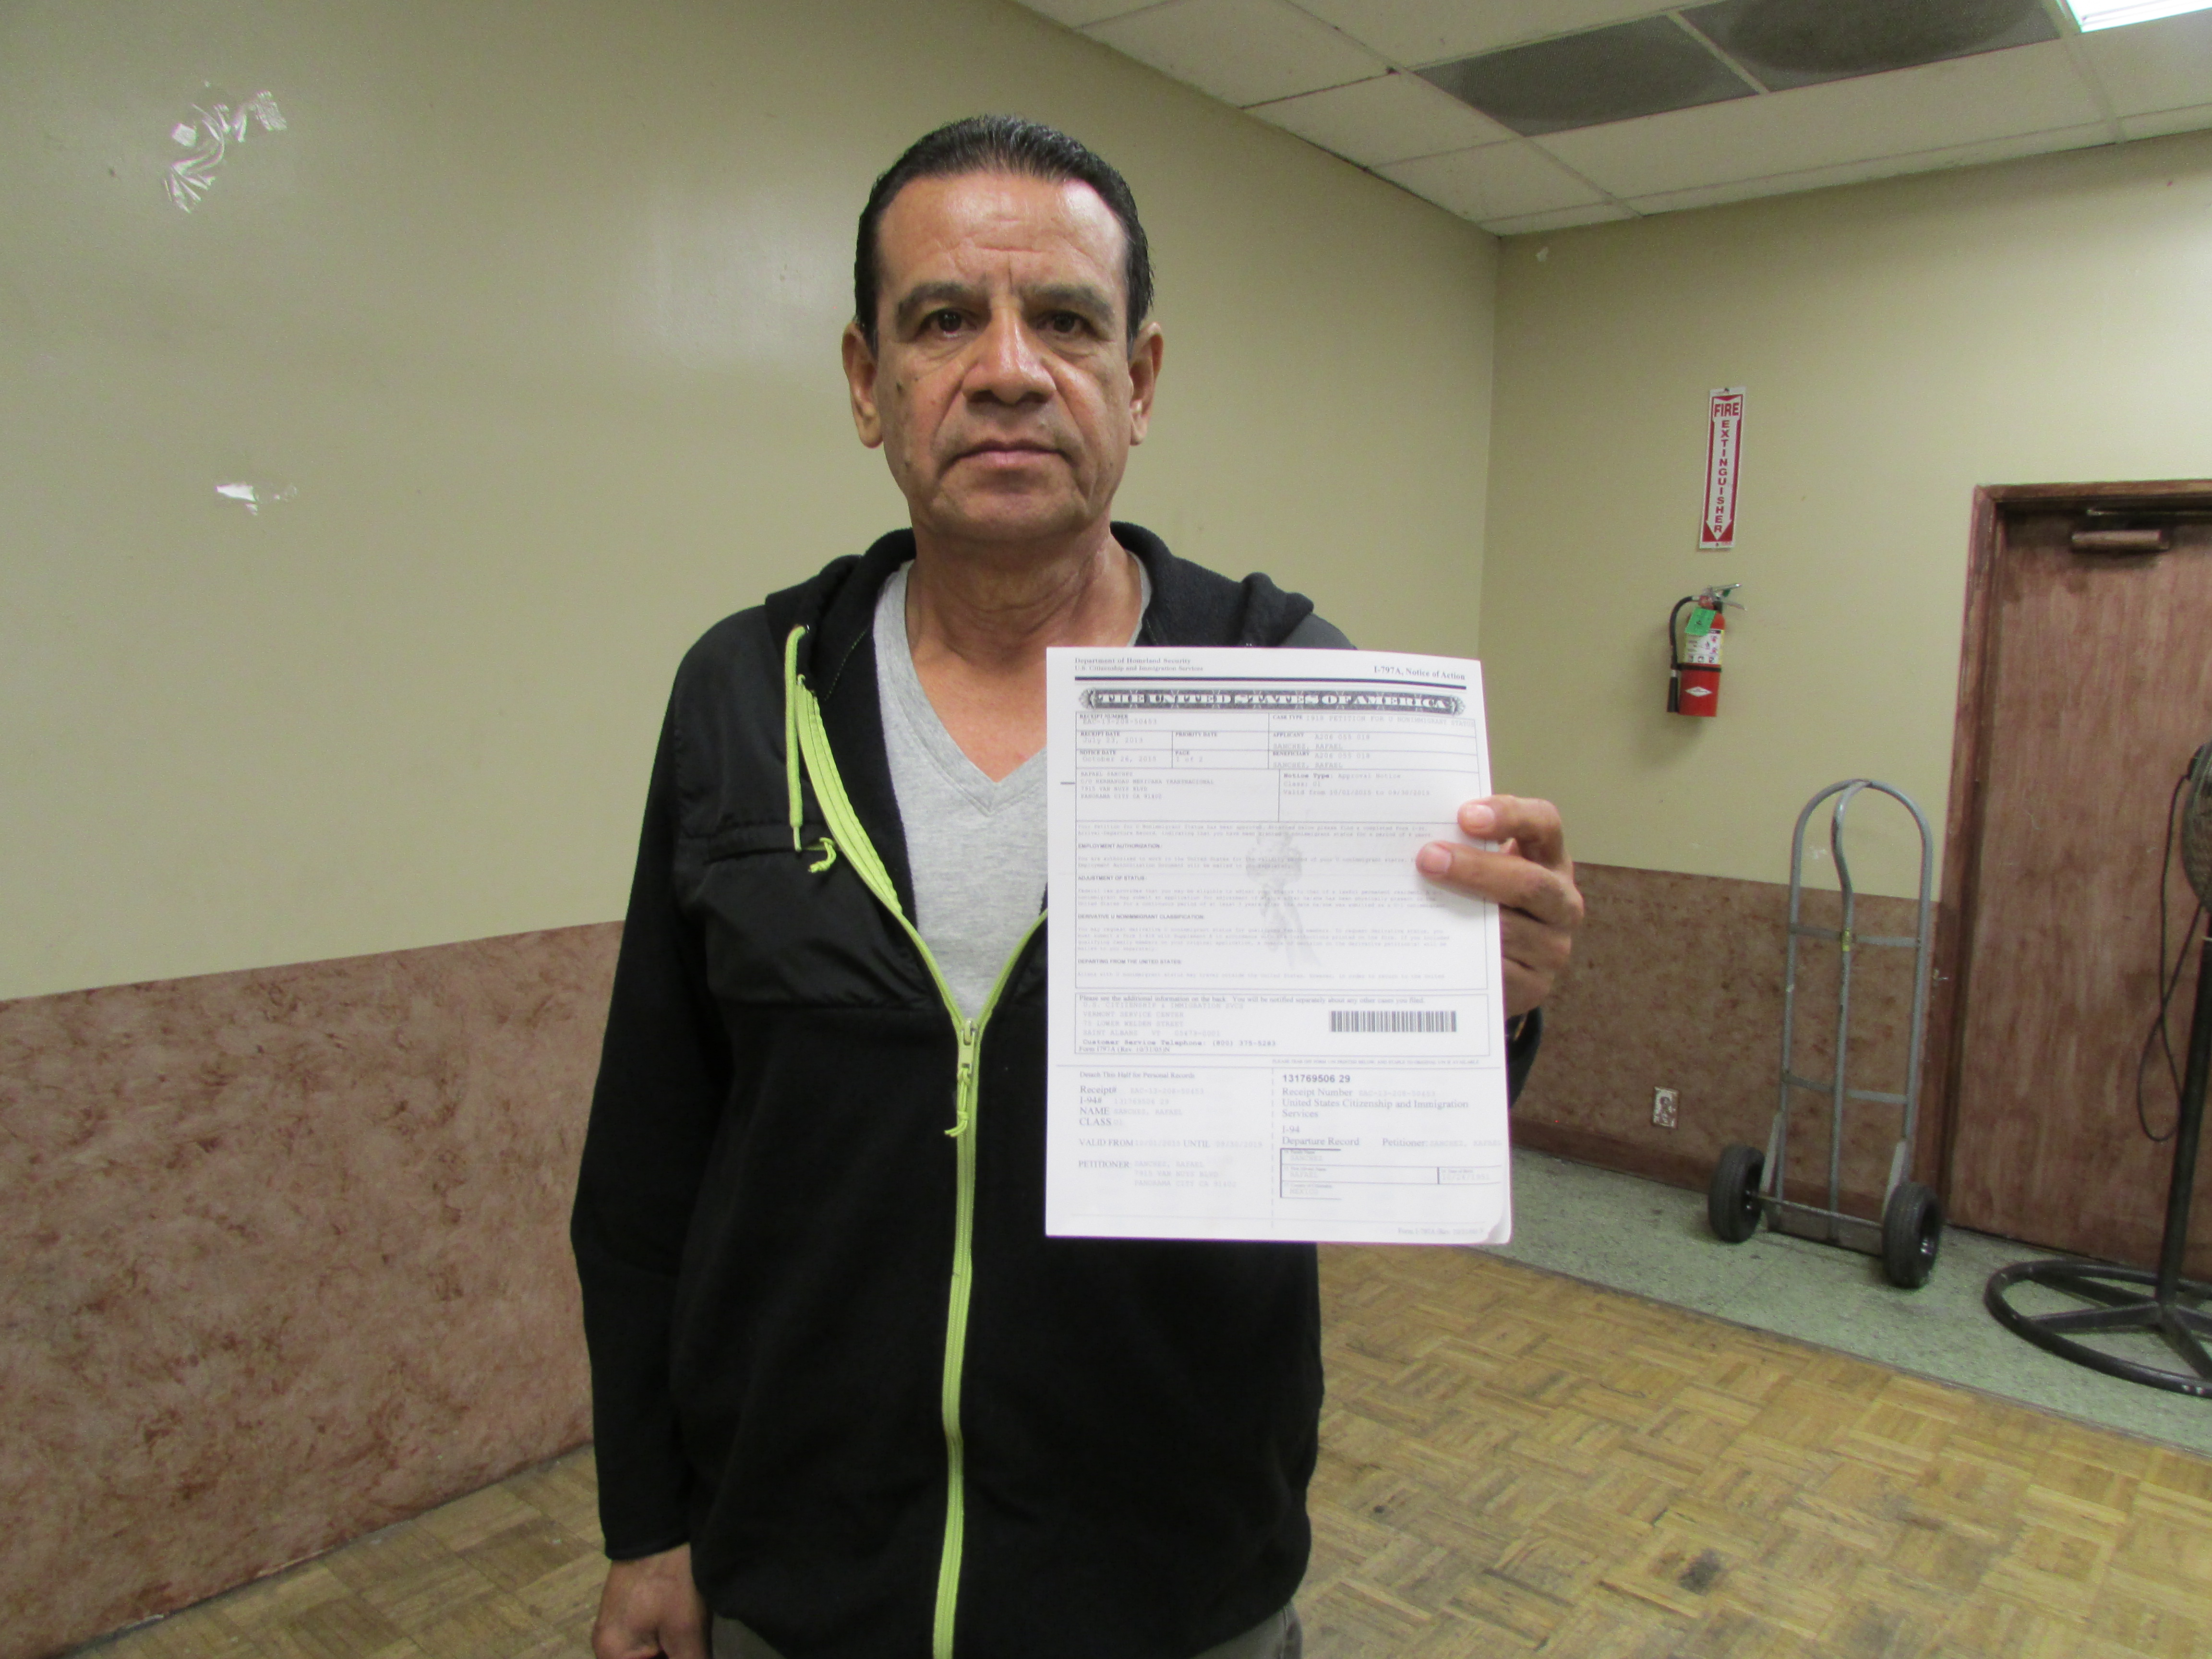 Rafael Sánchez, beneficiario de una visa U, está en proceso de solicitar la residencia. (Araceli Martínez/La Opinión).